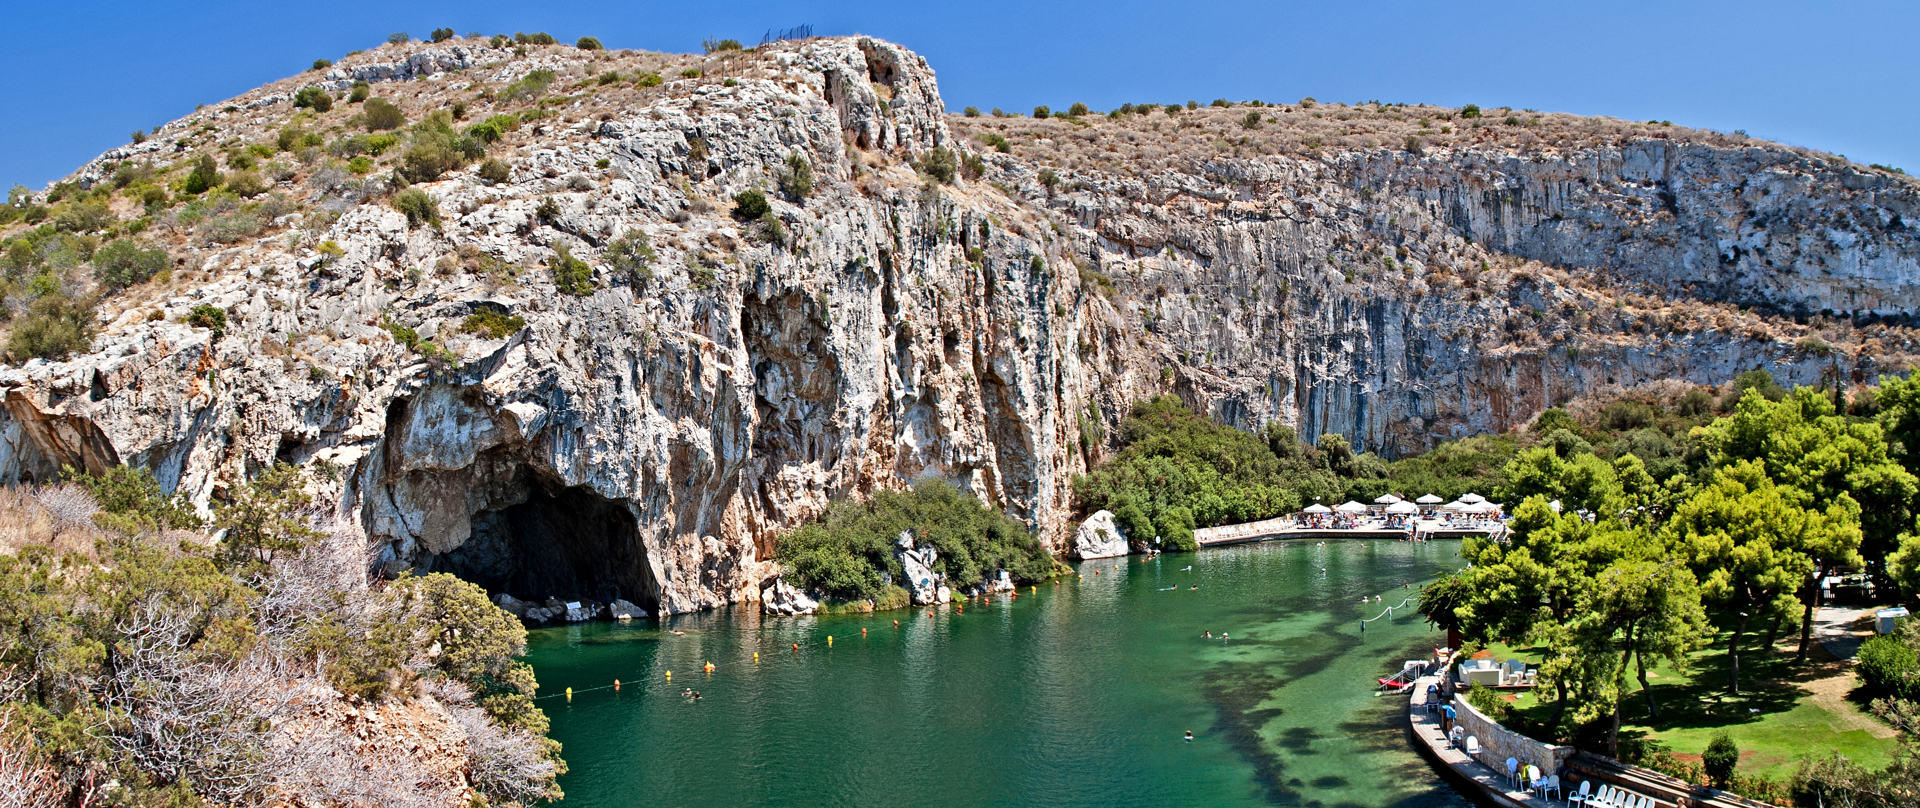 Vouliagmeni, Thermal Radonic Mineral Water Lake near Athens, Greece. 